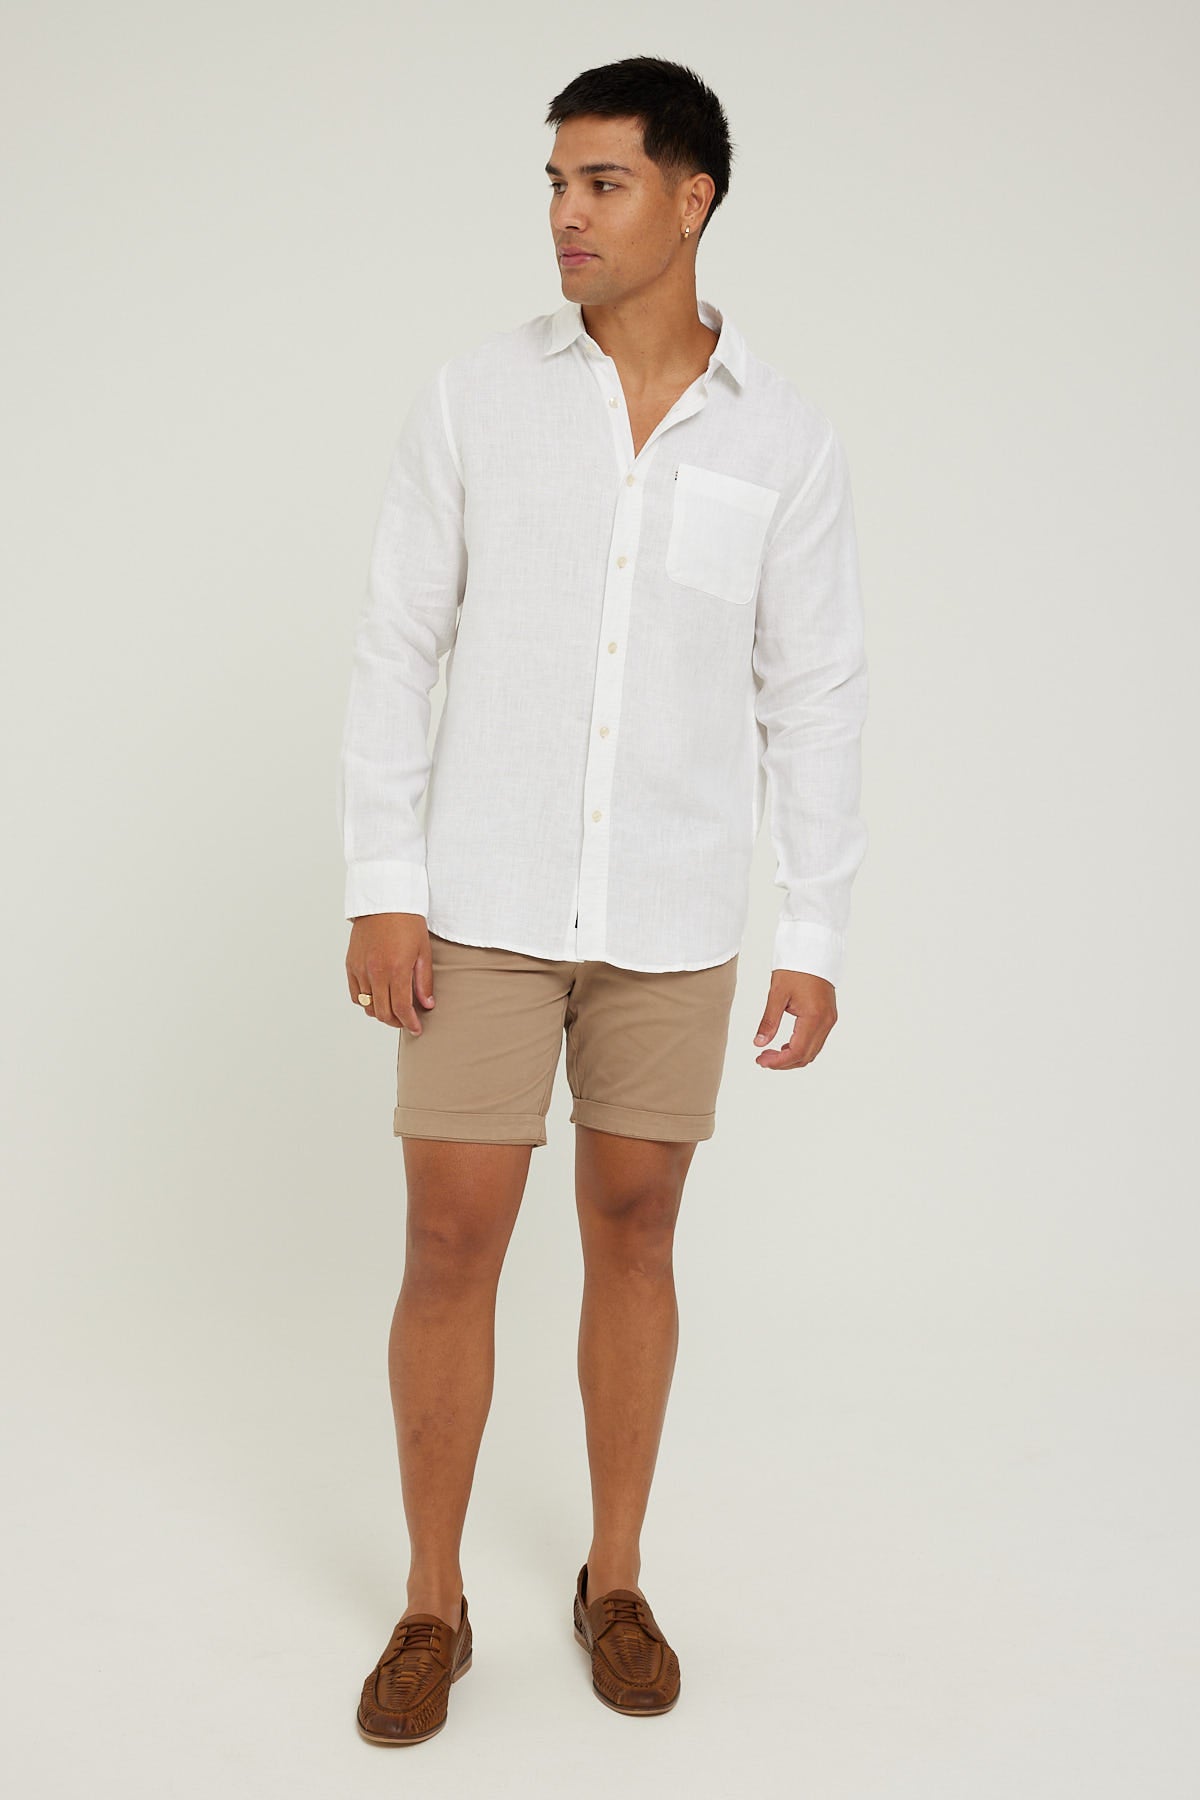 Academy Brand Hampton LS Shirt White